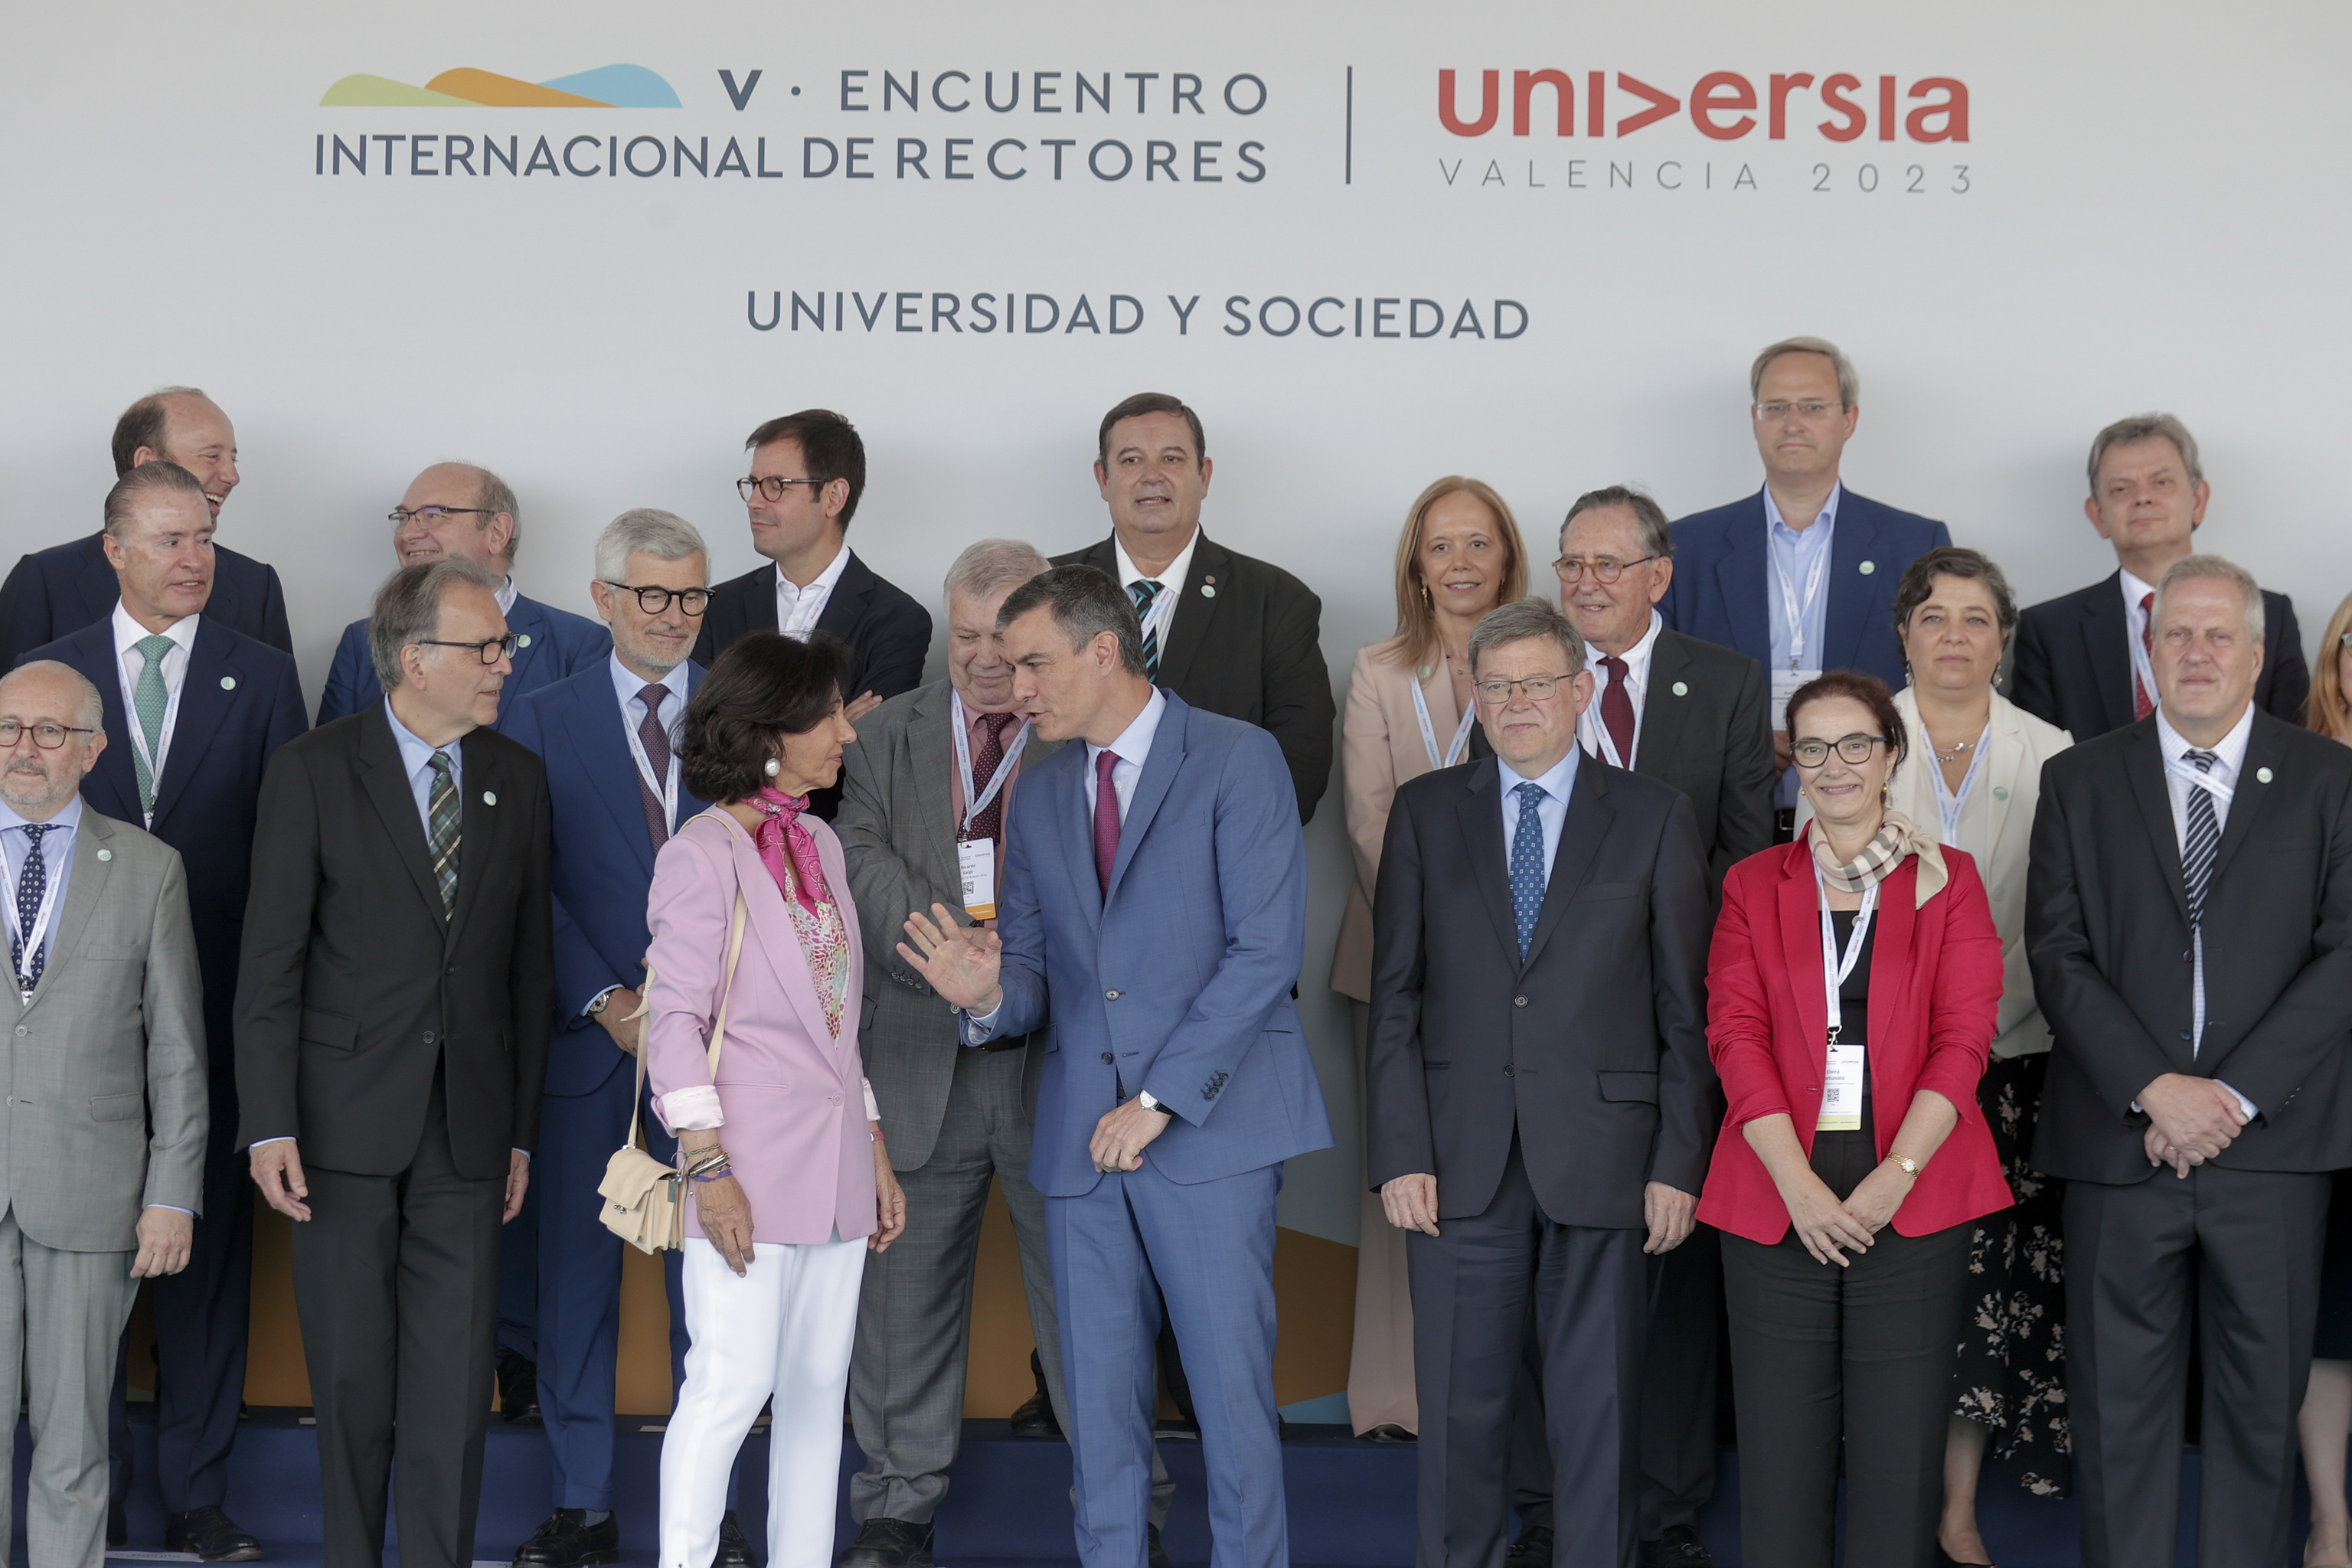 Ana Botín, Pedro Sánchez y Ximo Puig, con los rectores, en el V Encuentro Internacional de Rectores Universia.